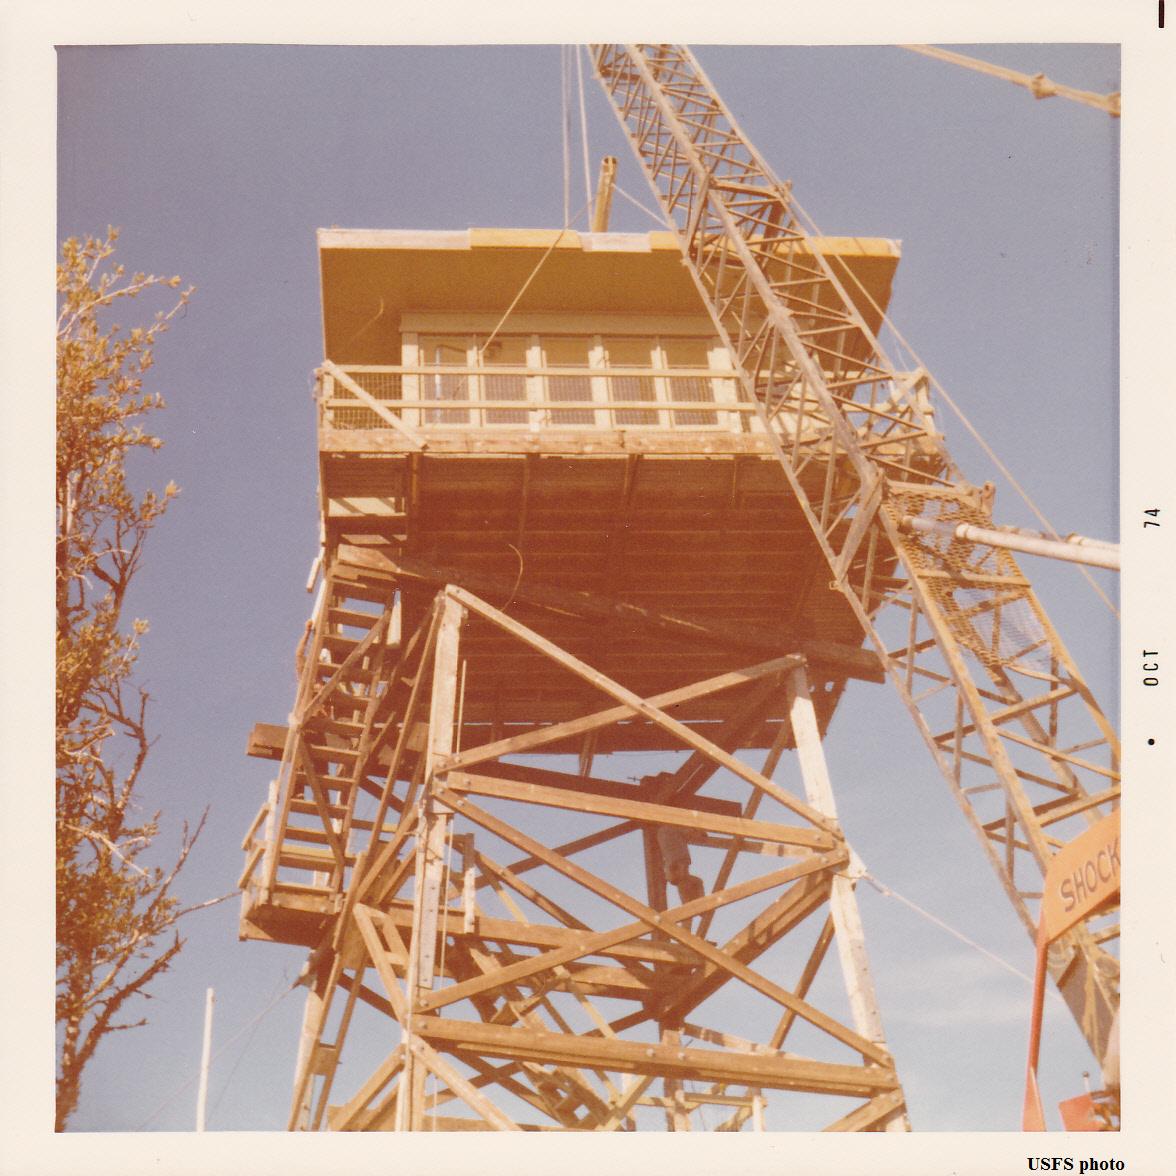 Antelope Mtn. in 1974